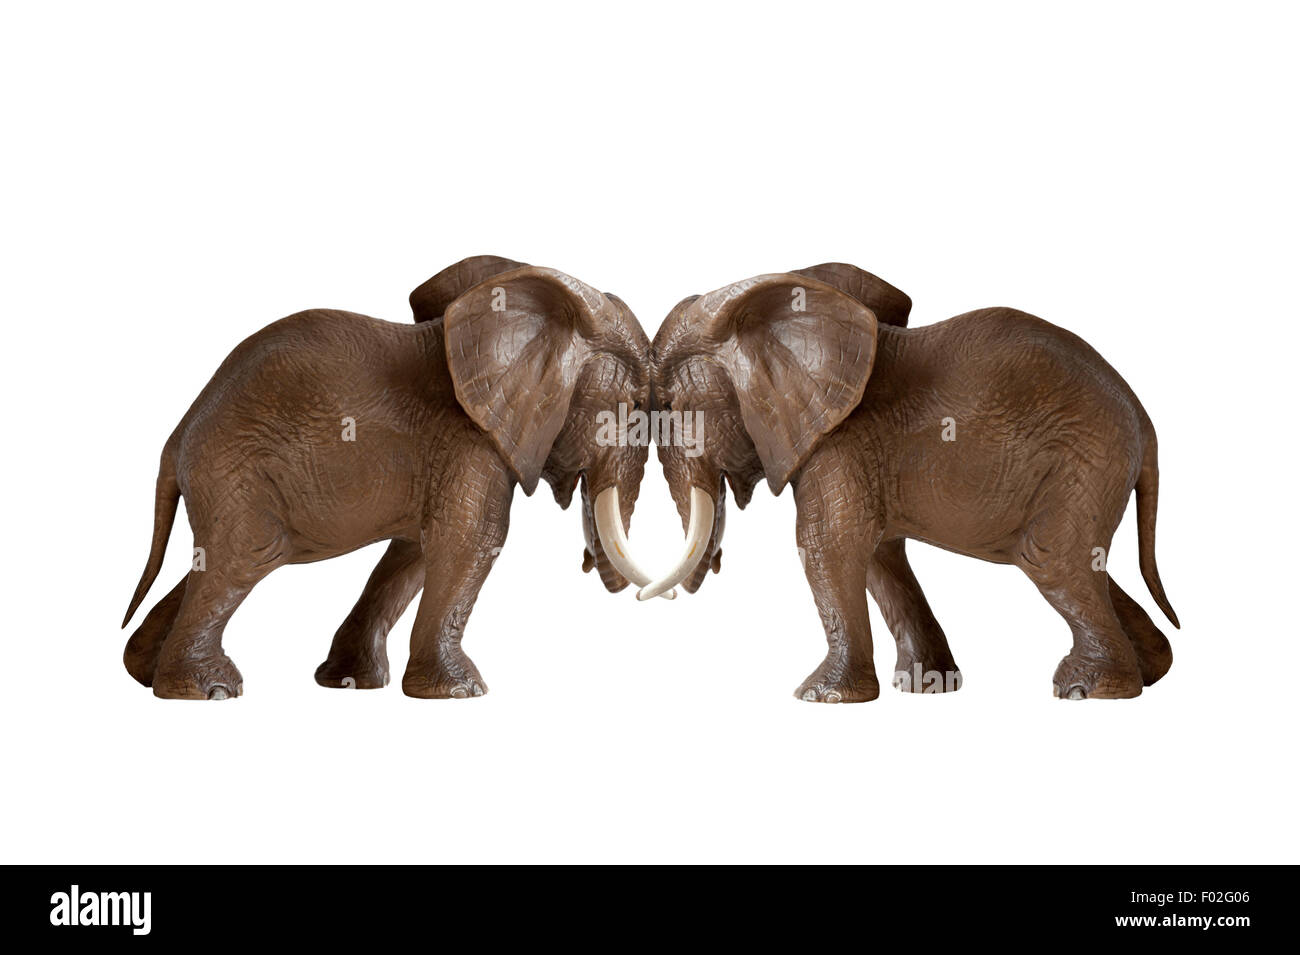 Test der Stärke Konzept Elefanten drängen gegeneinander isolierten auf weißen Hintergrund Stockfoto